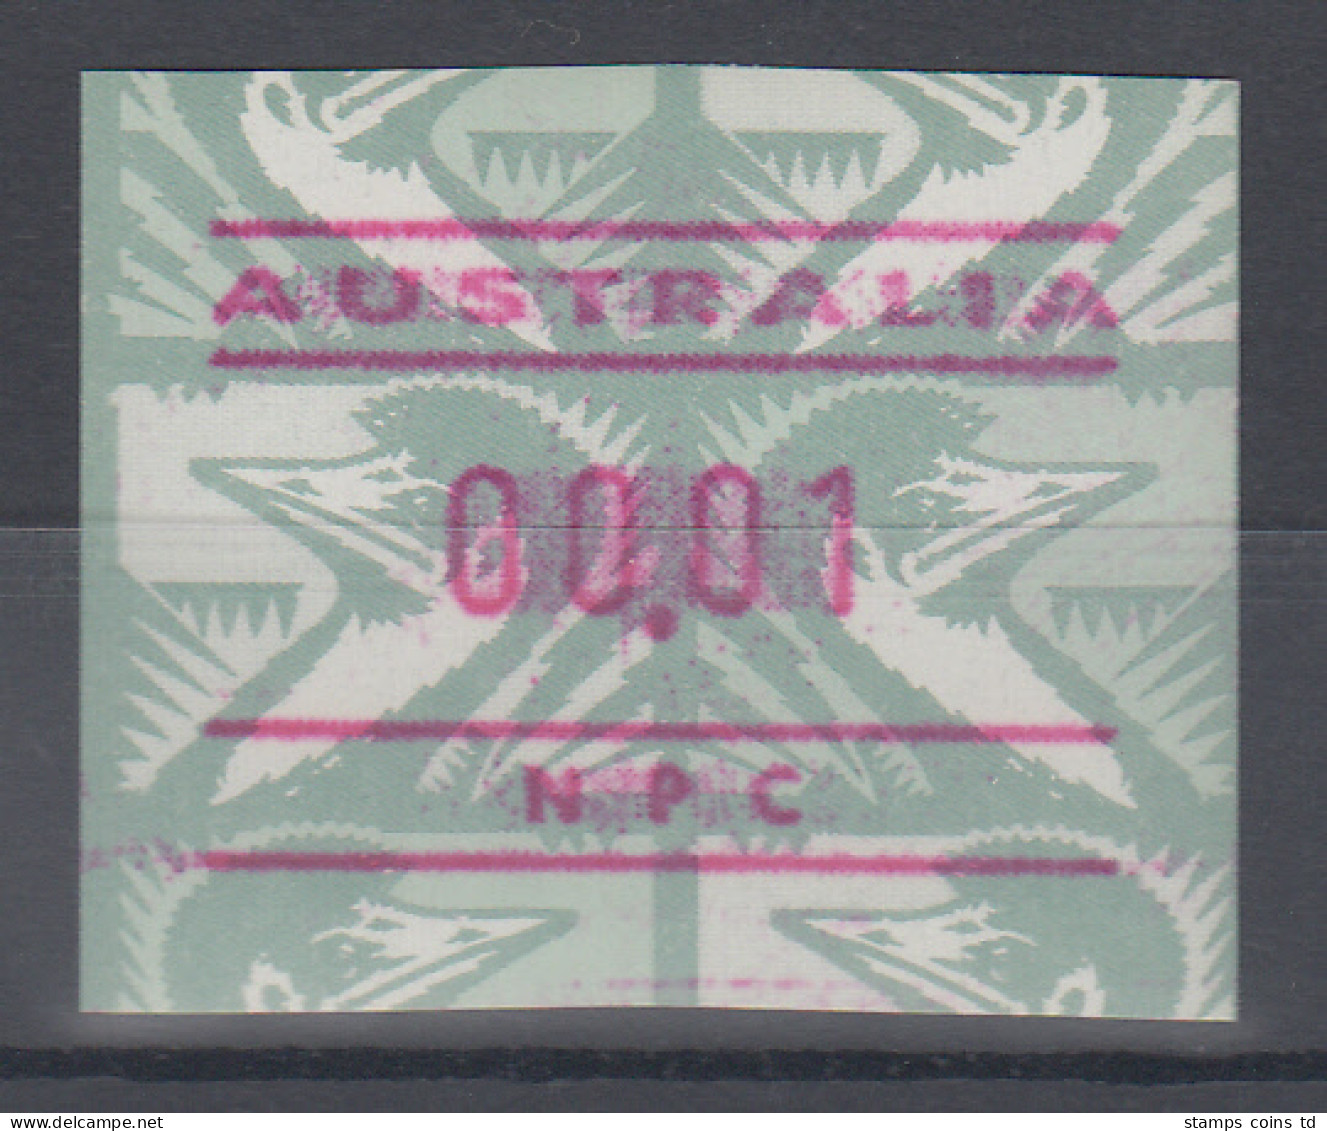 Australien Frama-ATM Emu Grün Ausgabe NPC (National Philatelic Centre) ** - Machine Labels [ATM]